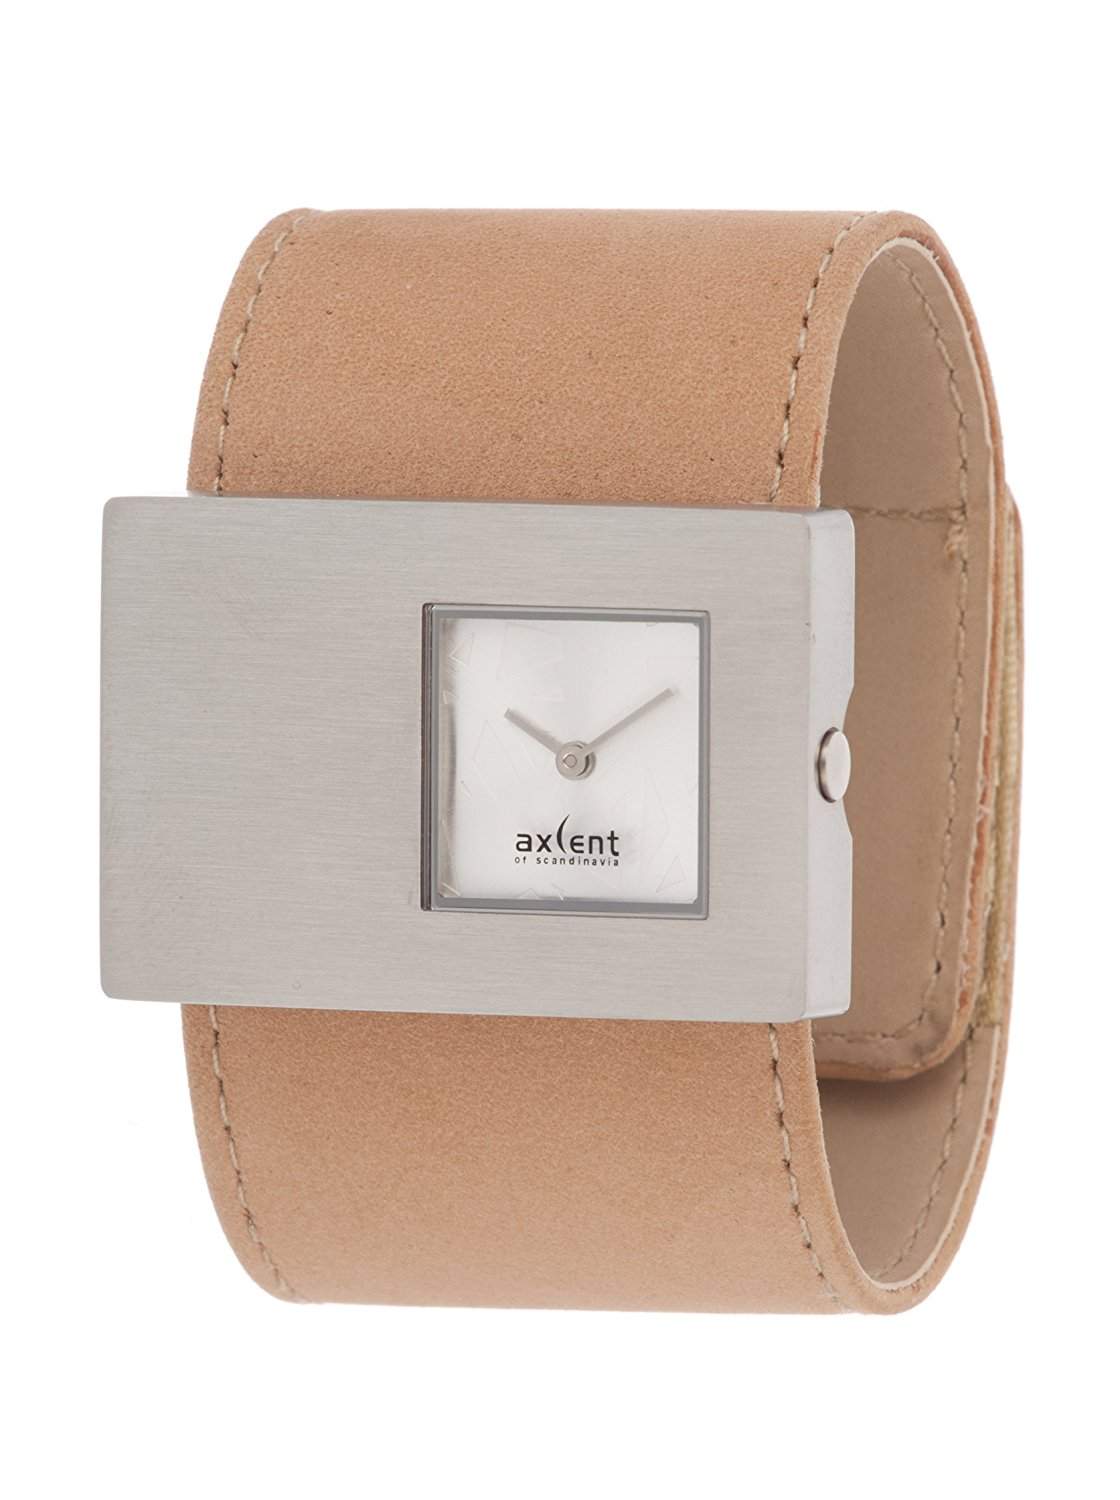 Axcent of Scandinavia Damen Uhr Clip Watch - X20202-639 hautfarben